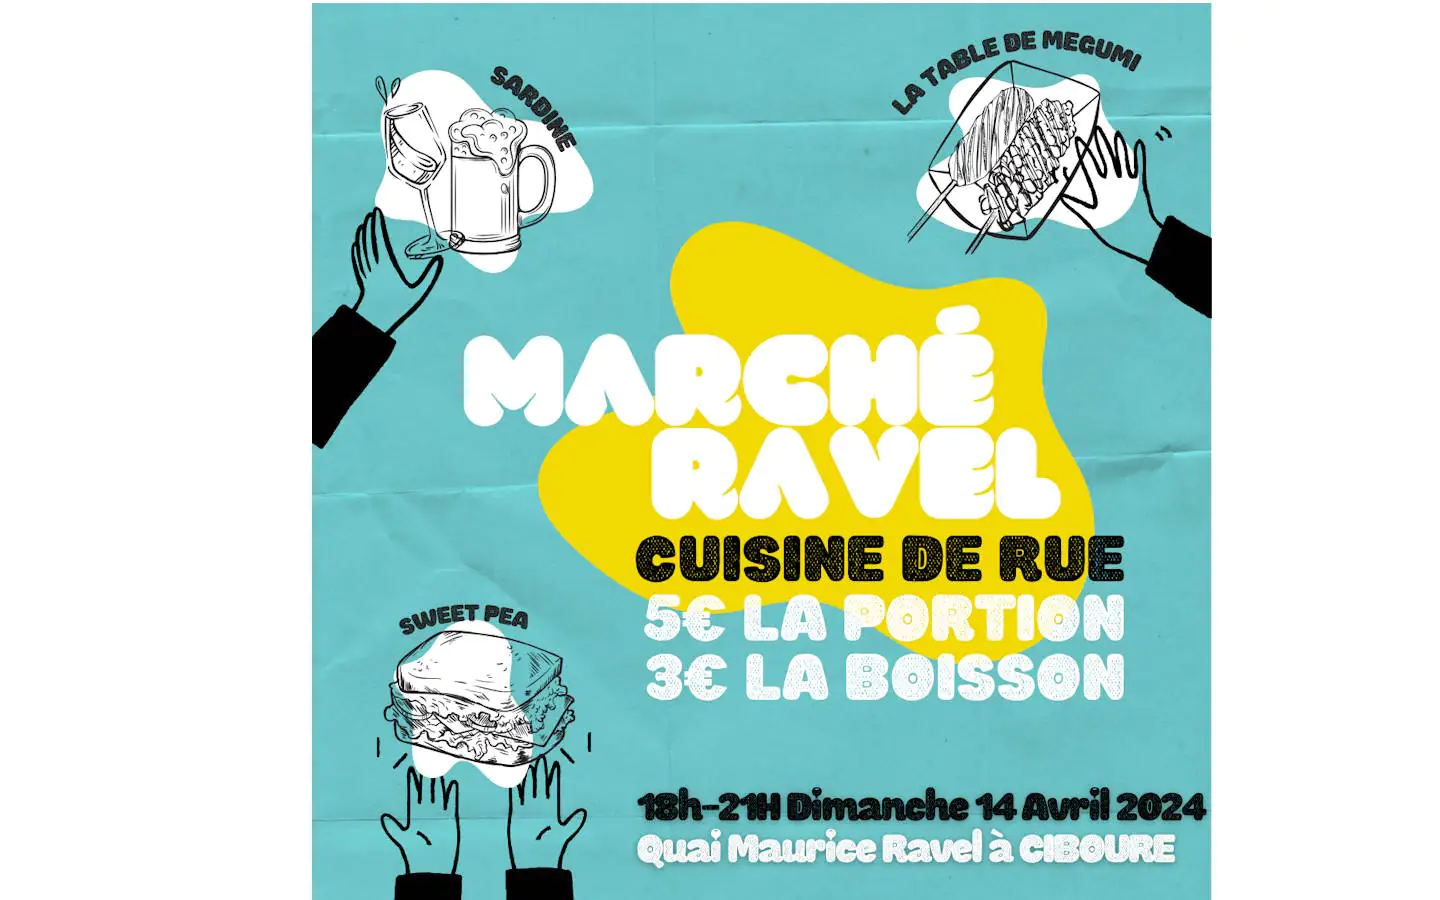 Marché Ravel cuisine de rue